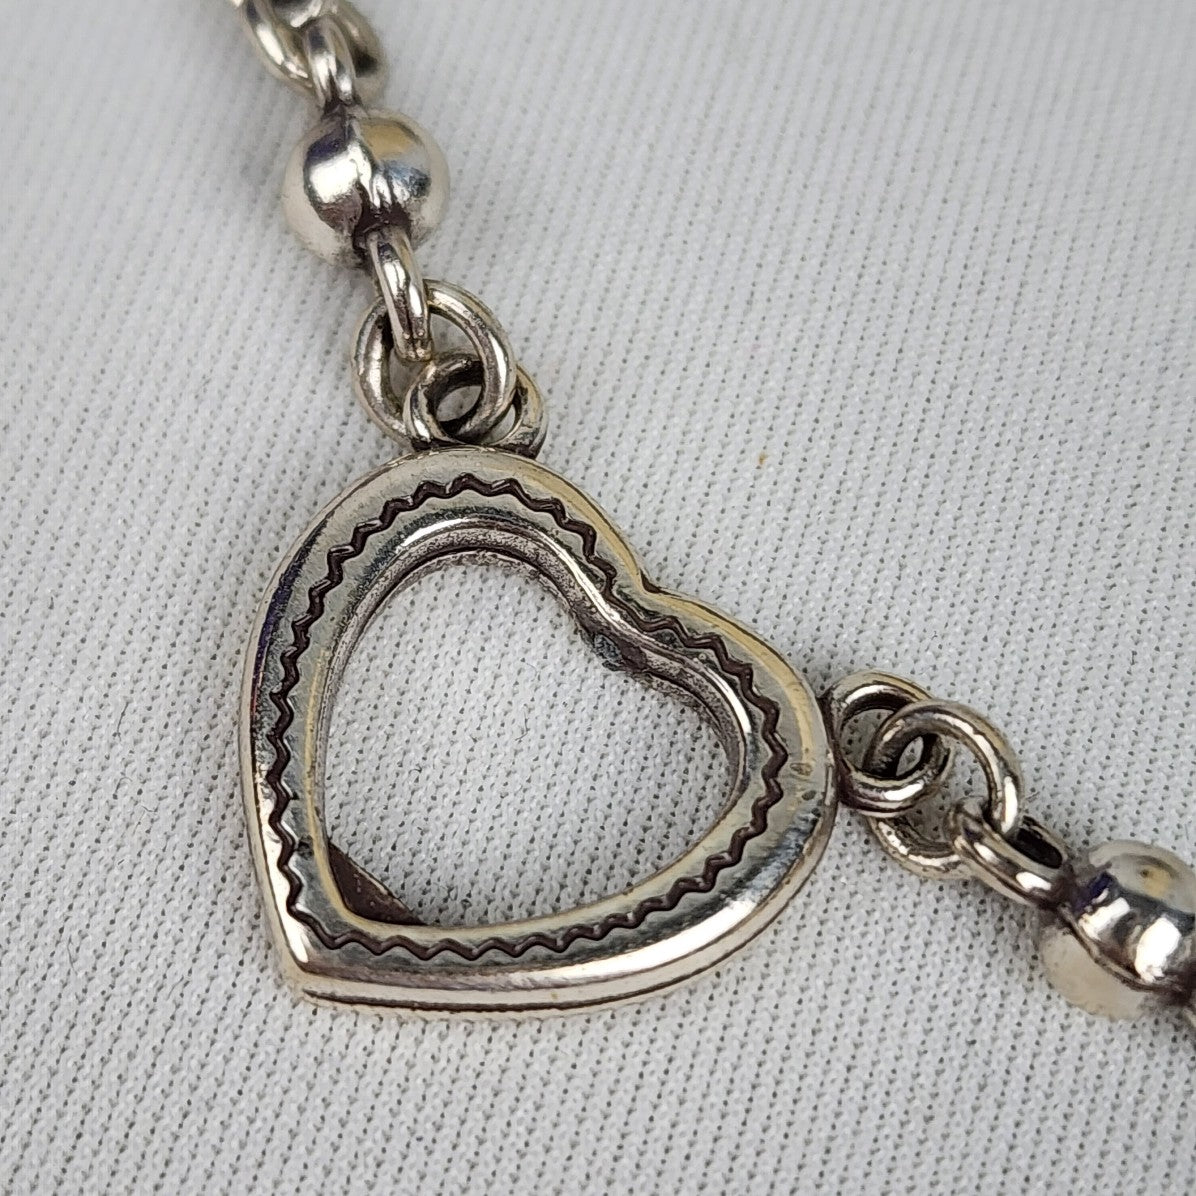 Brighton Silver Tone Three Heart Necklace